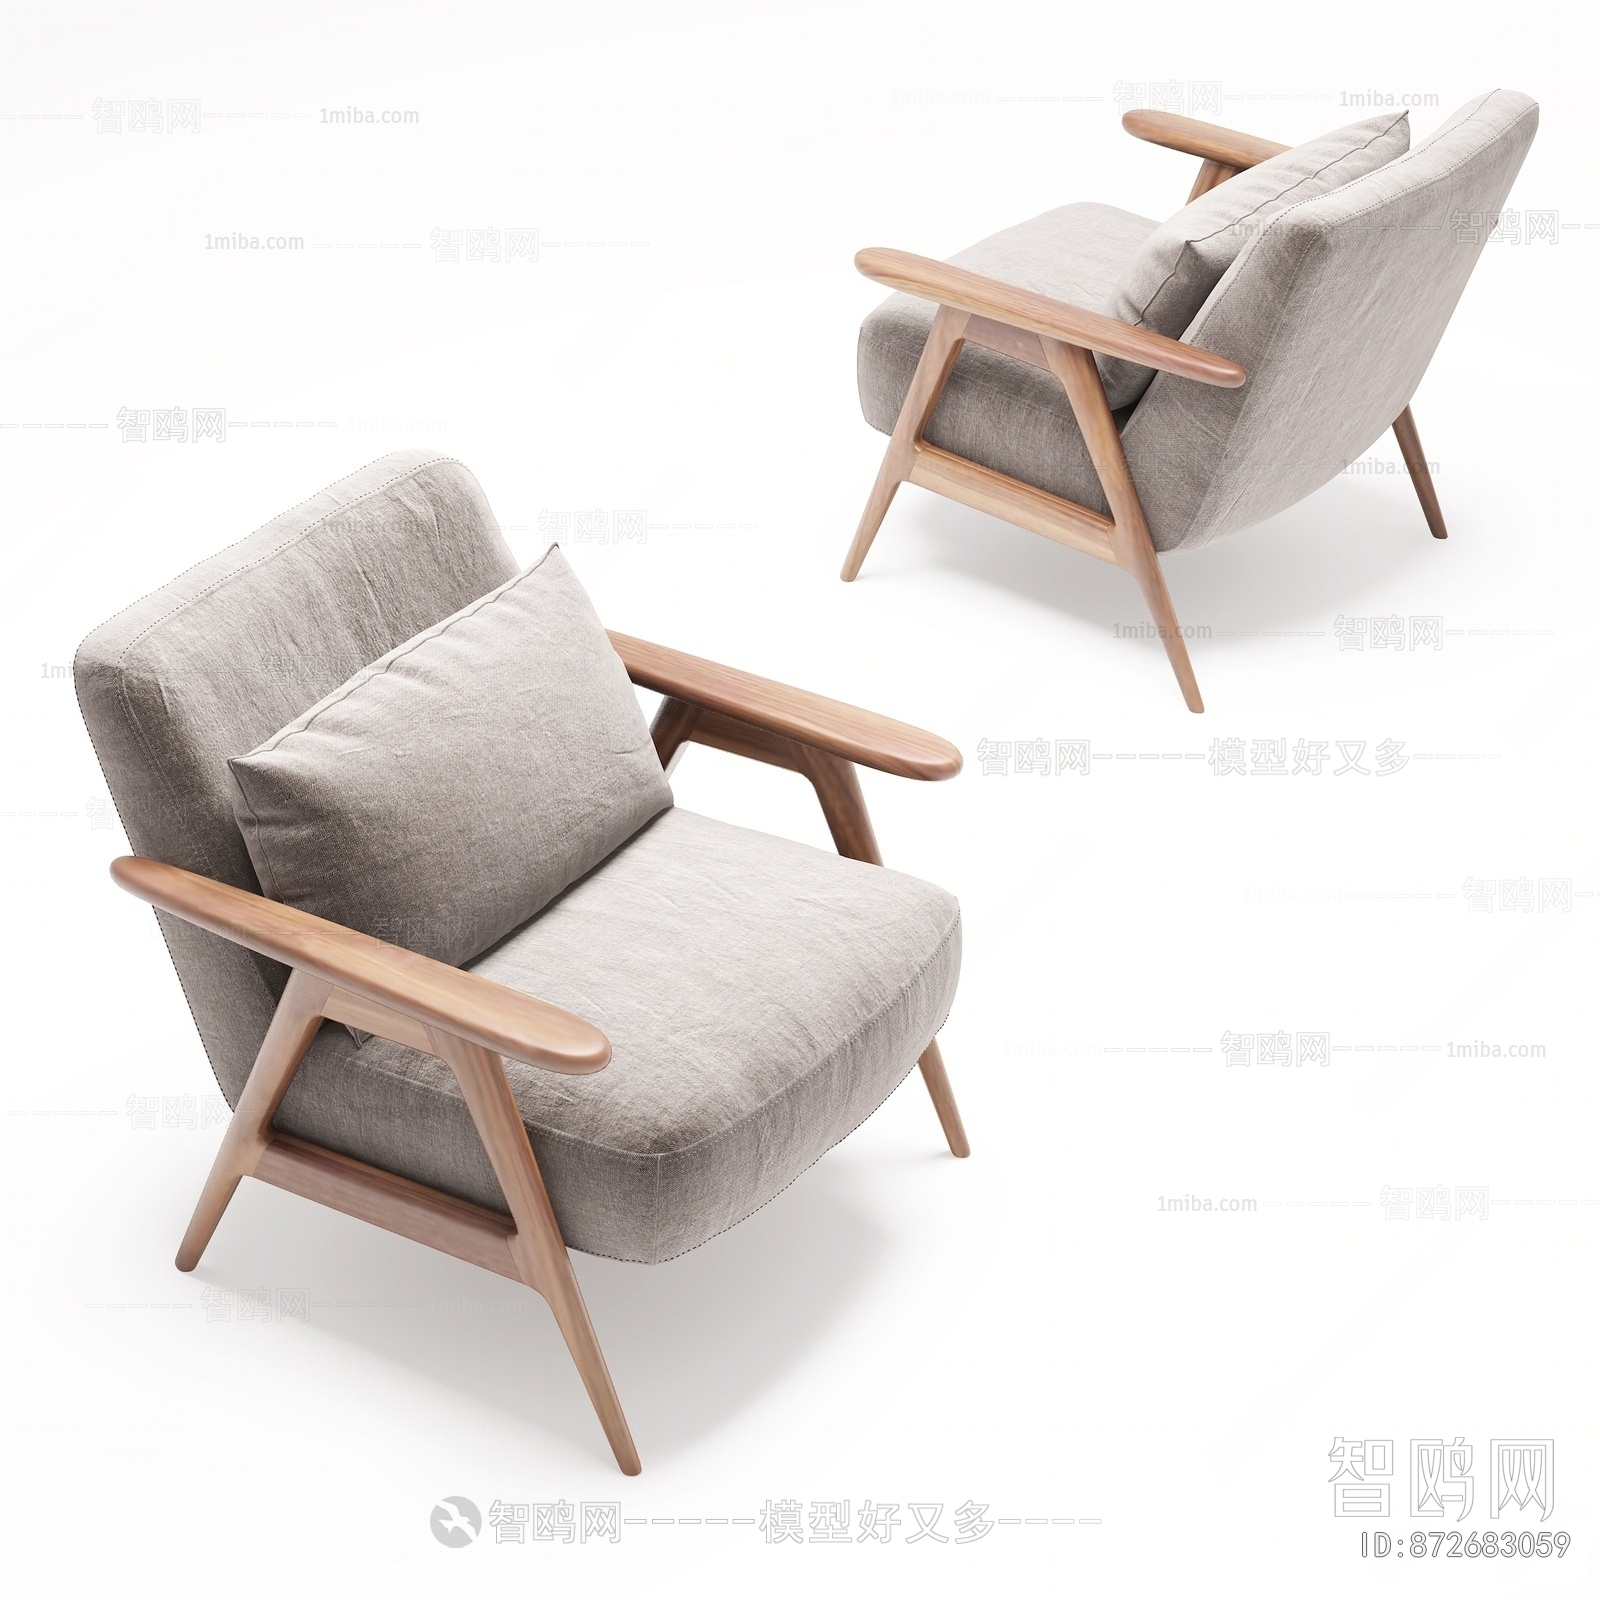 Japanese Style Single Sofa